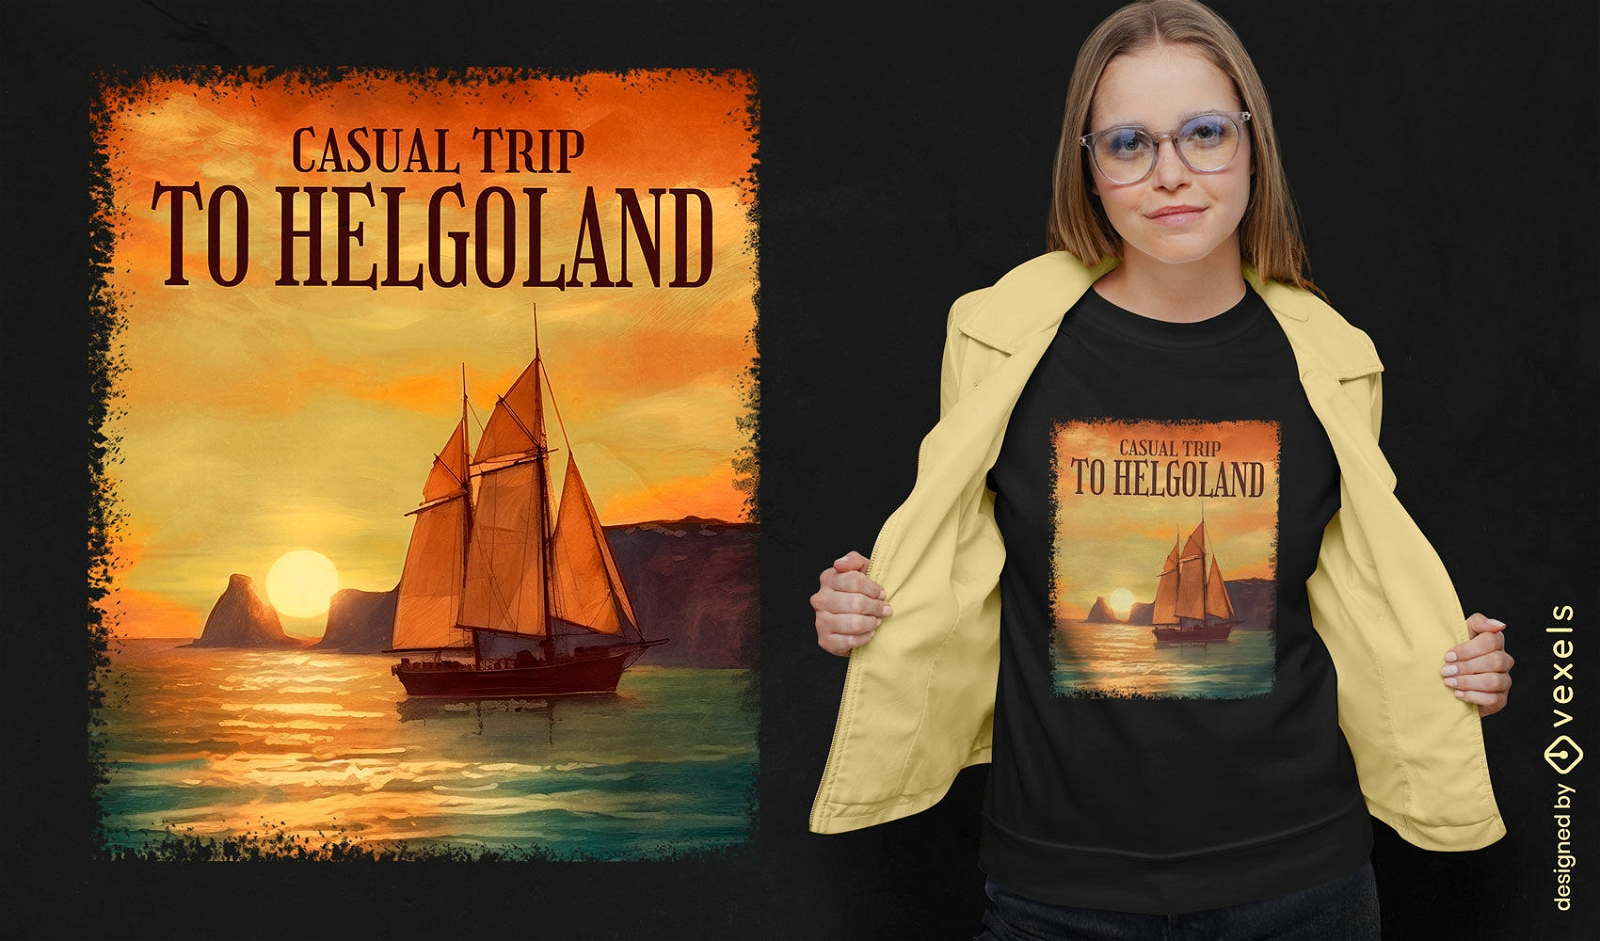 Sailboat sunset t-shirt design